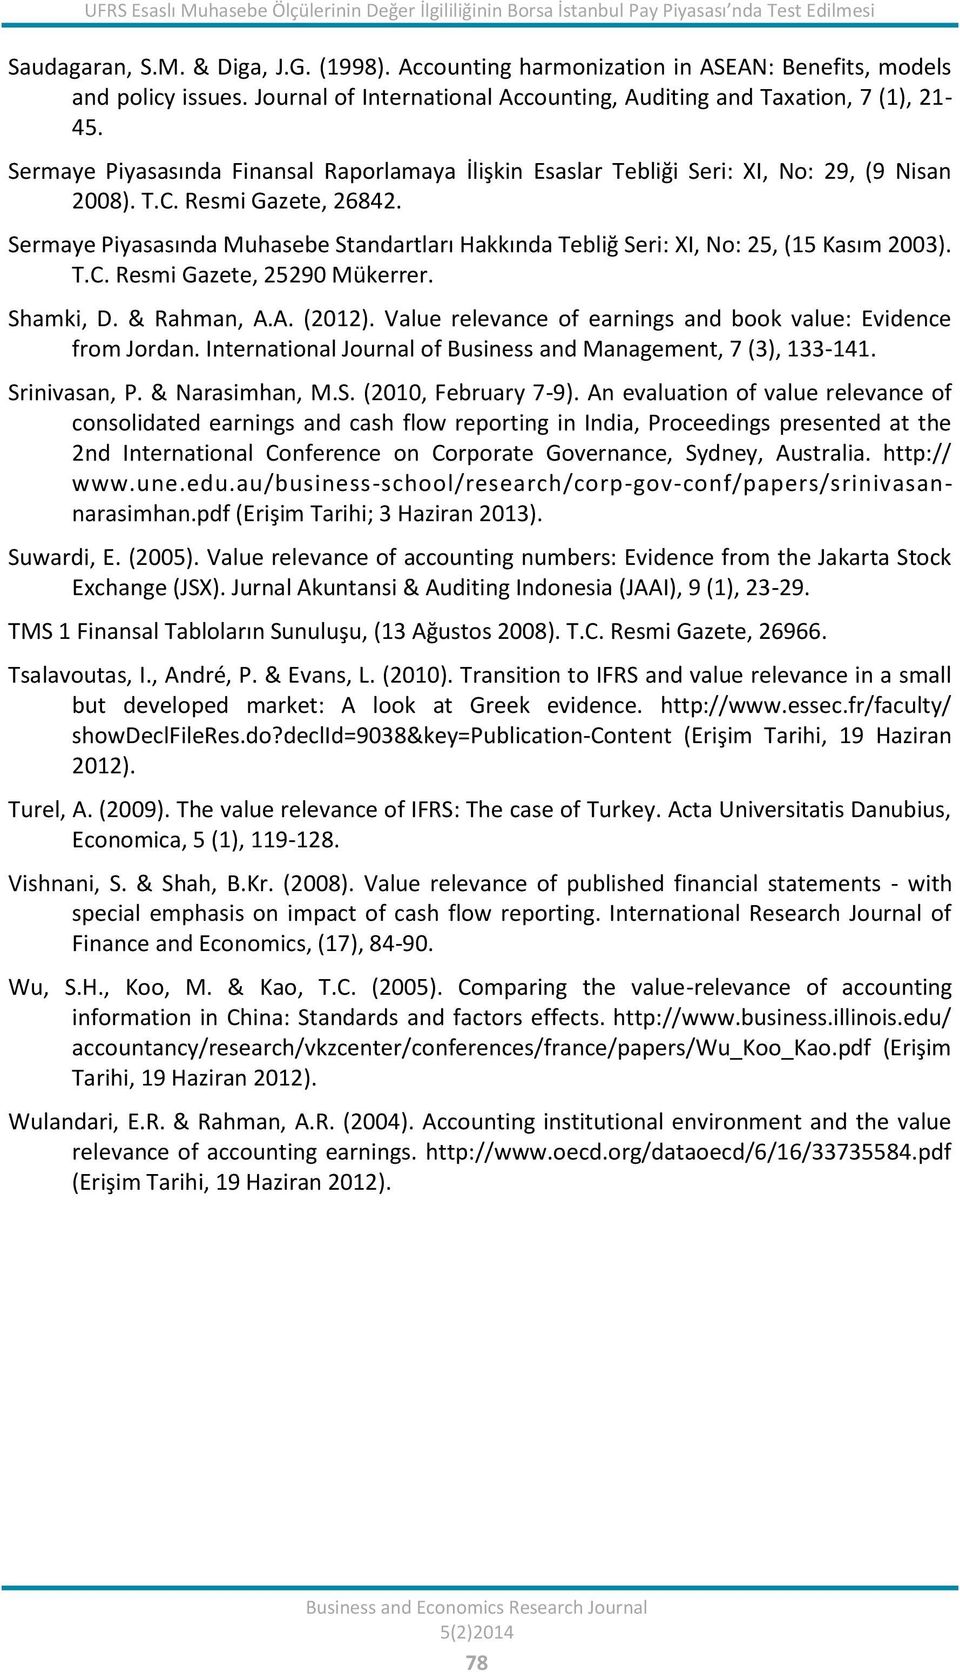 Sermaye Piyasasında Finansal Raporlamaya İlişkin Esaslar Tebliği Seri: XI, No: 29, (9 Nisan 2008). T.C. Resmi Gazete, 26842.